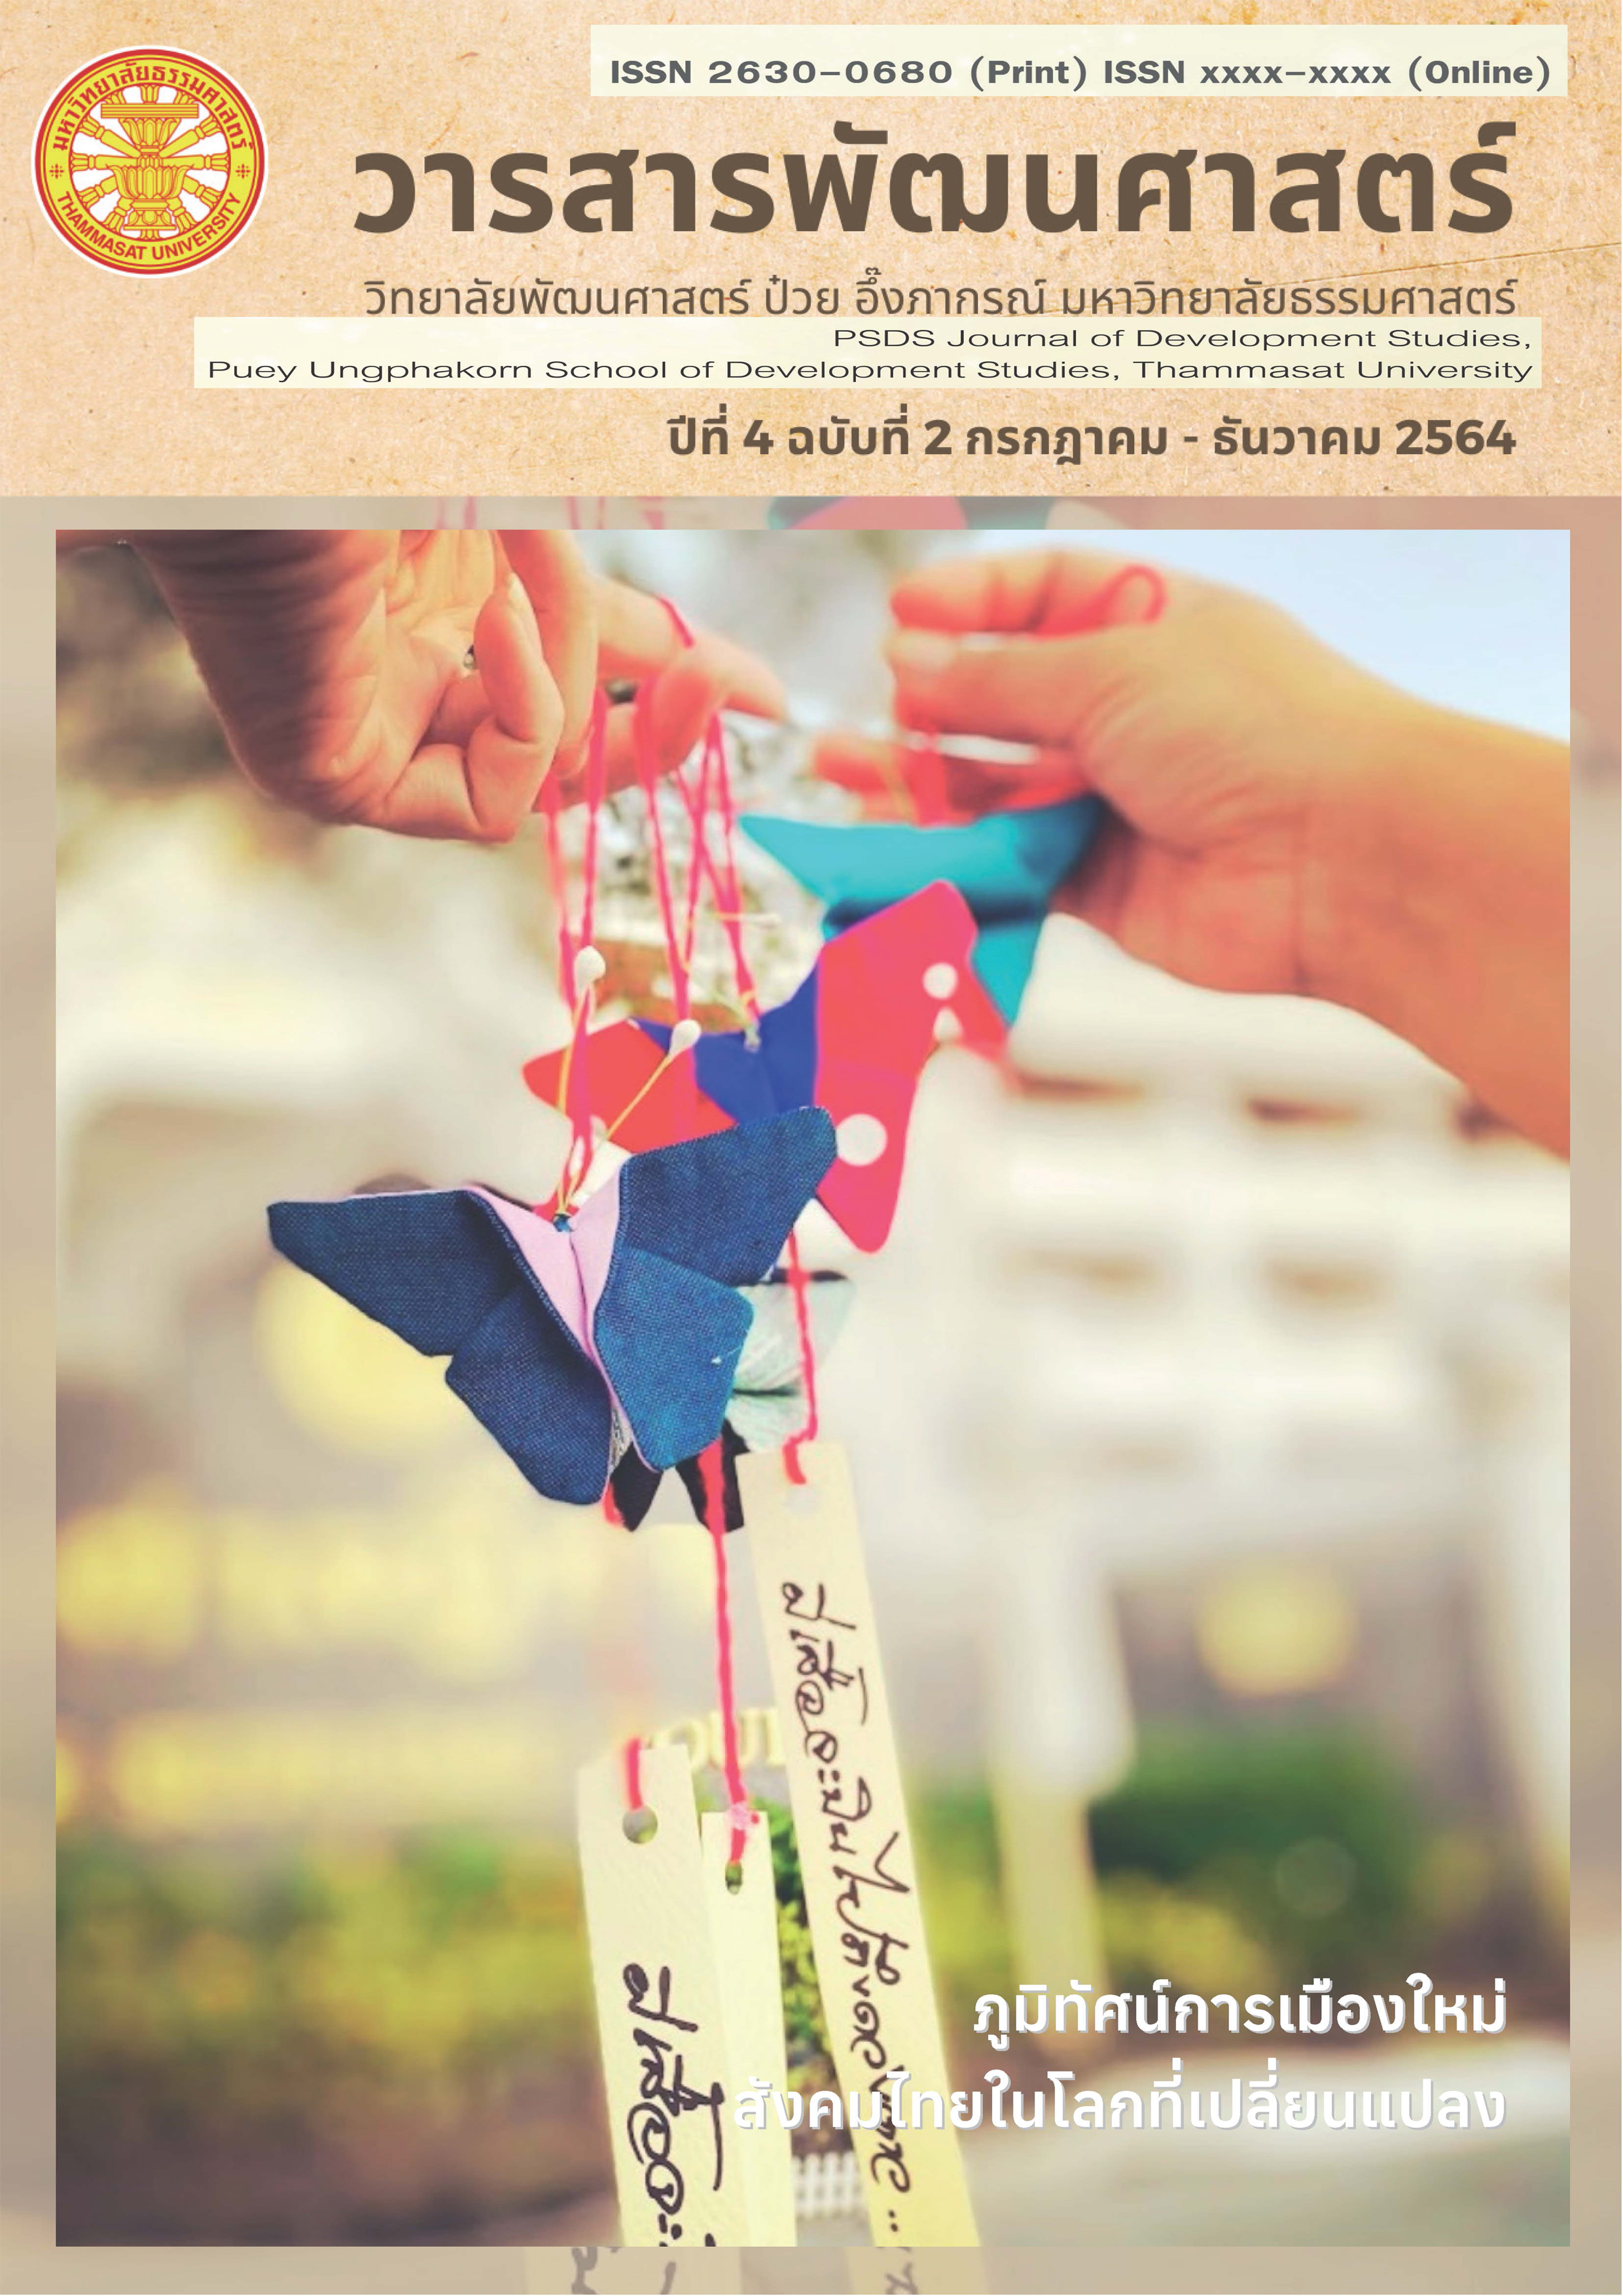 					ดู ปีที่ 4 ฉบับที่ 2 กรกฎาคม - ธันวาคม (2021): ภูมิทัศน์การเมืองใหม่ สังคมไทยในโลกที่เปลี่ยนแปลง
				